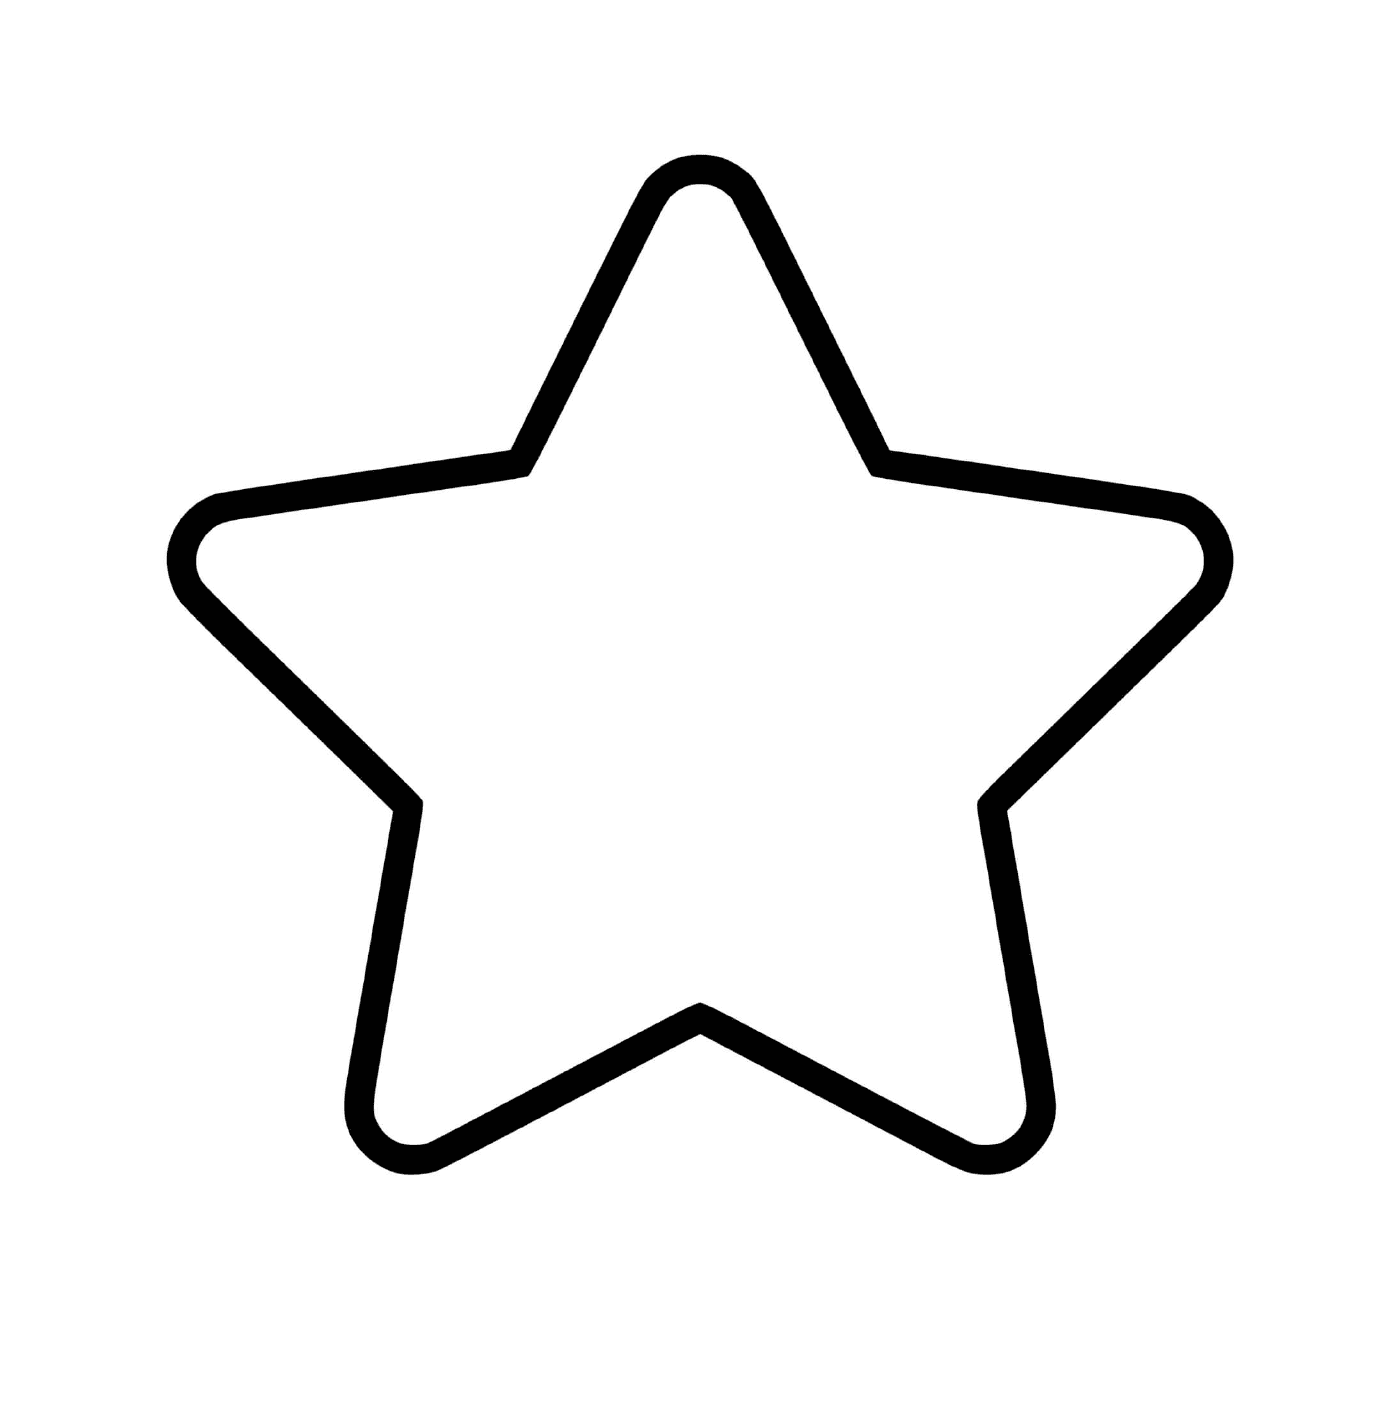   Une étoile facile à dessiner 